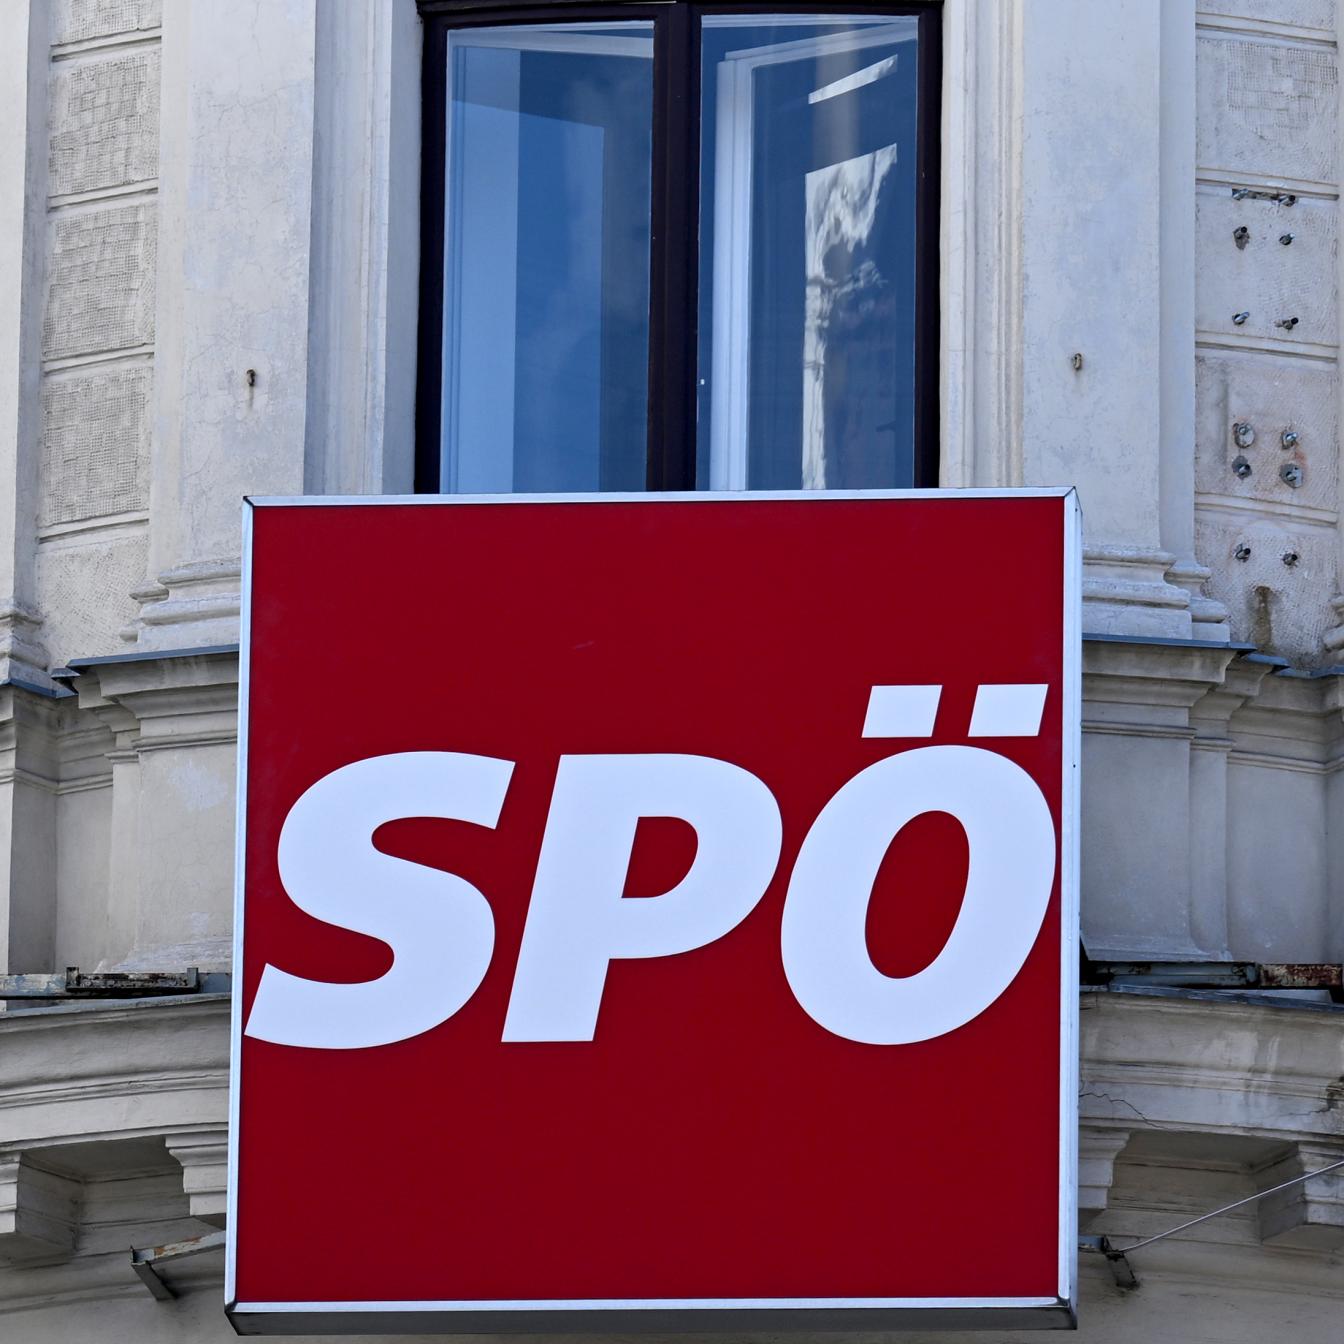 ++ THEMENBILD ++ SPÖ - SOZIALDEMOKRATISCHE PARTEI ÖSTERREICHS